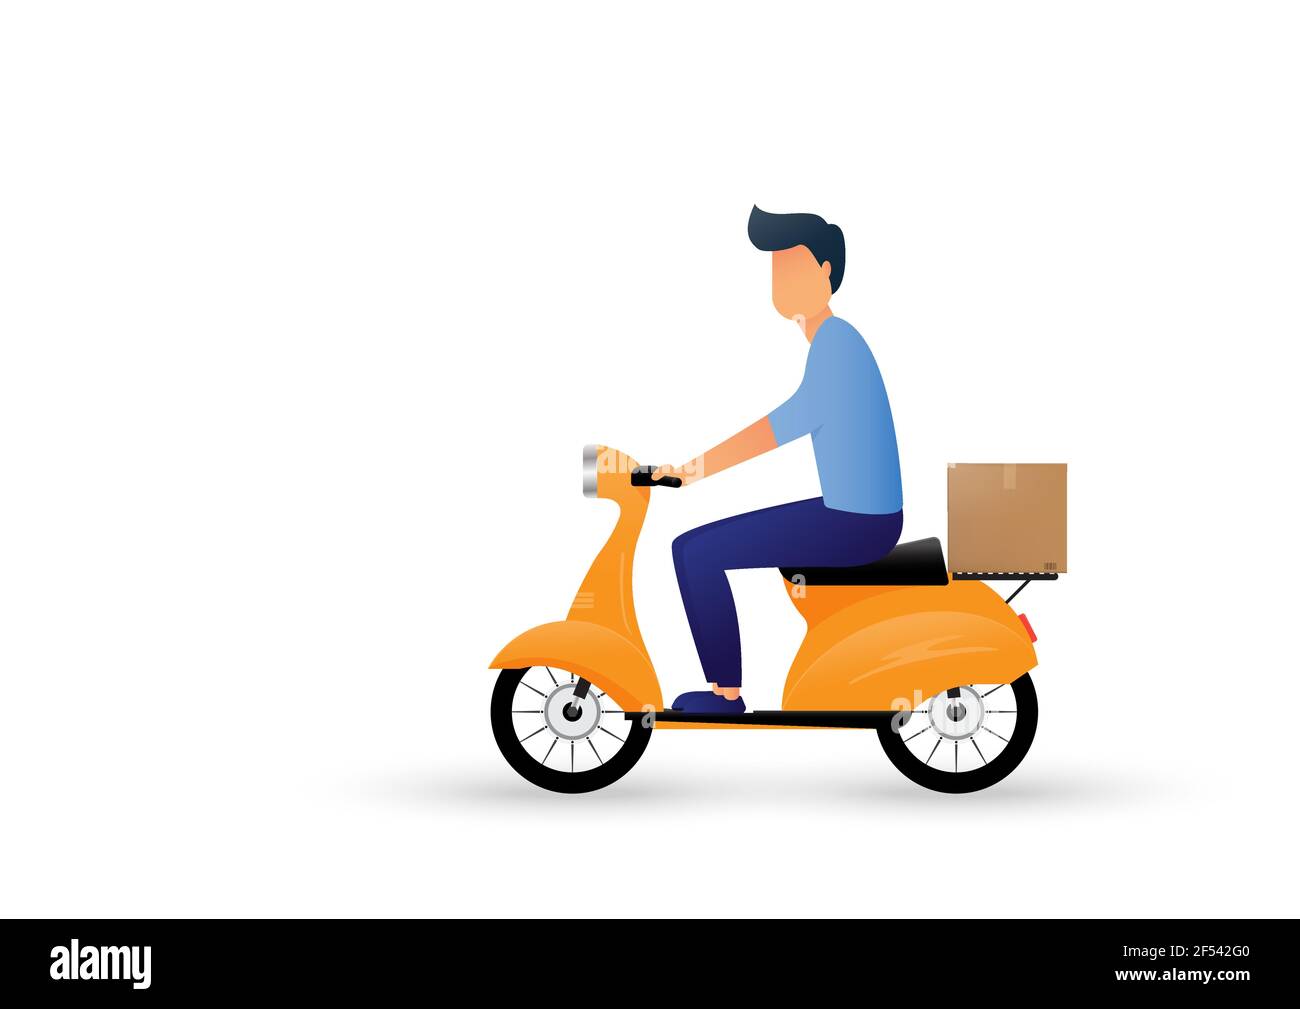 Dessin animé de moto-scooter de livraison. Livraison express. Illustration vectorielle Illustration de Vecteur